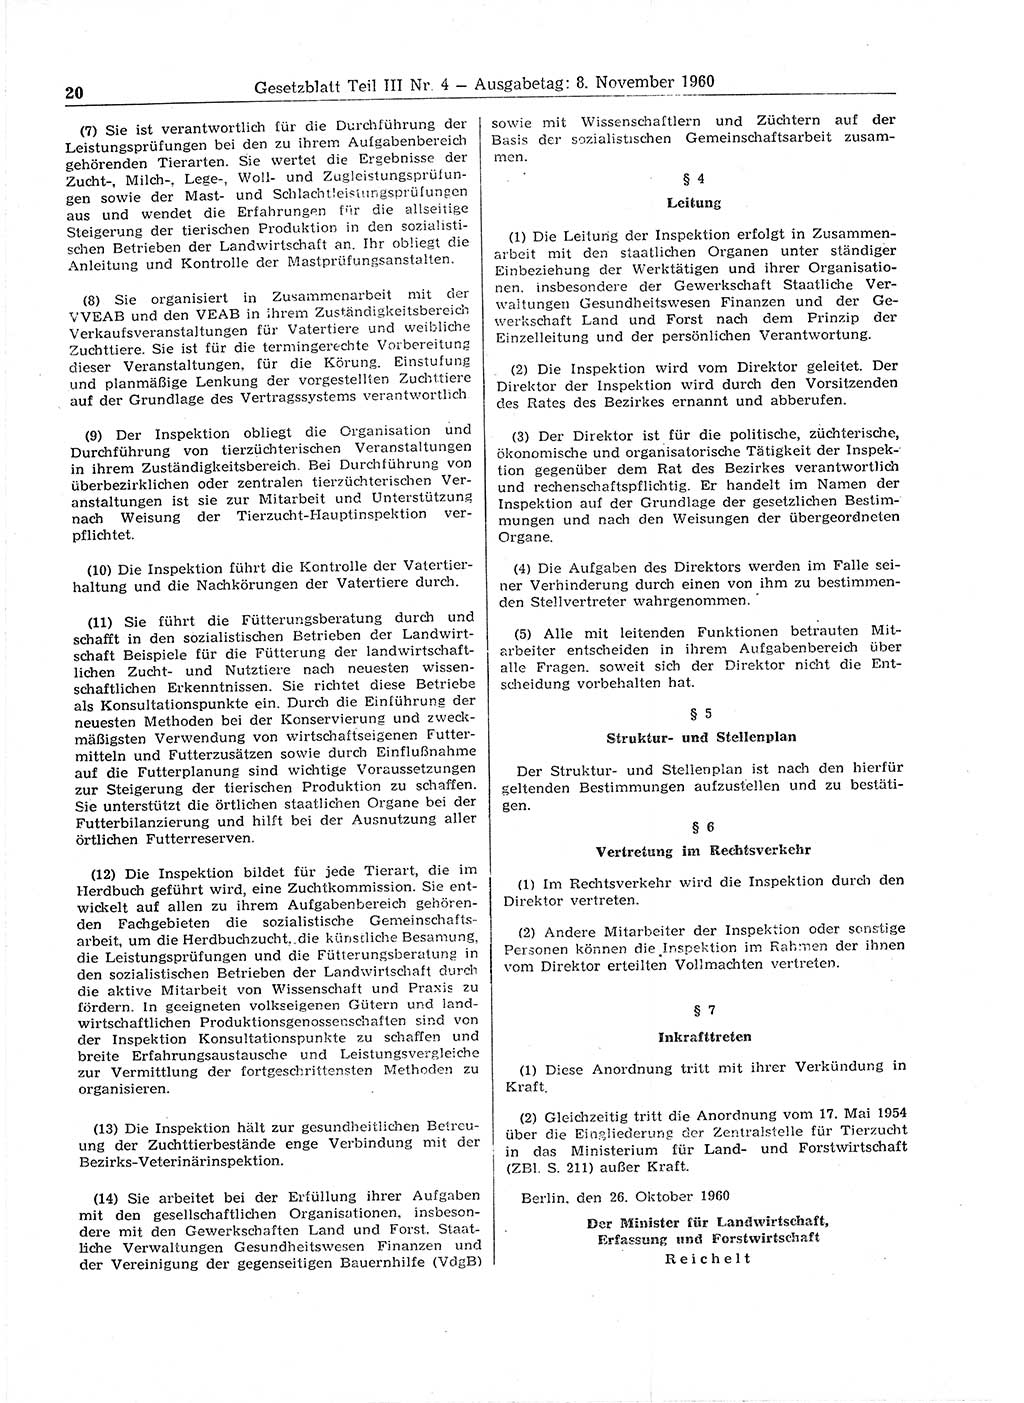 Gesetzblatt (GBl.) der Deutschen Demokratischen Republik (DDR) Teil ⅠⅠⅠ 1960, Seite 20 (GBl. DDR ⅠⅠⅠ 1960, S. 20)